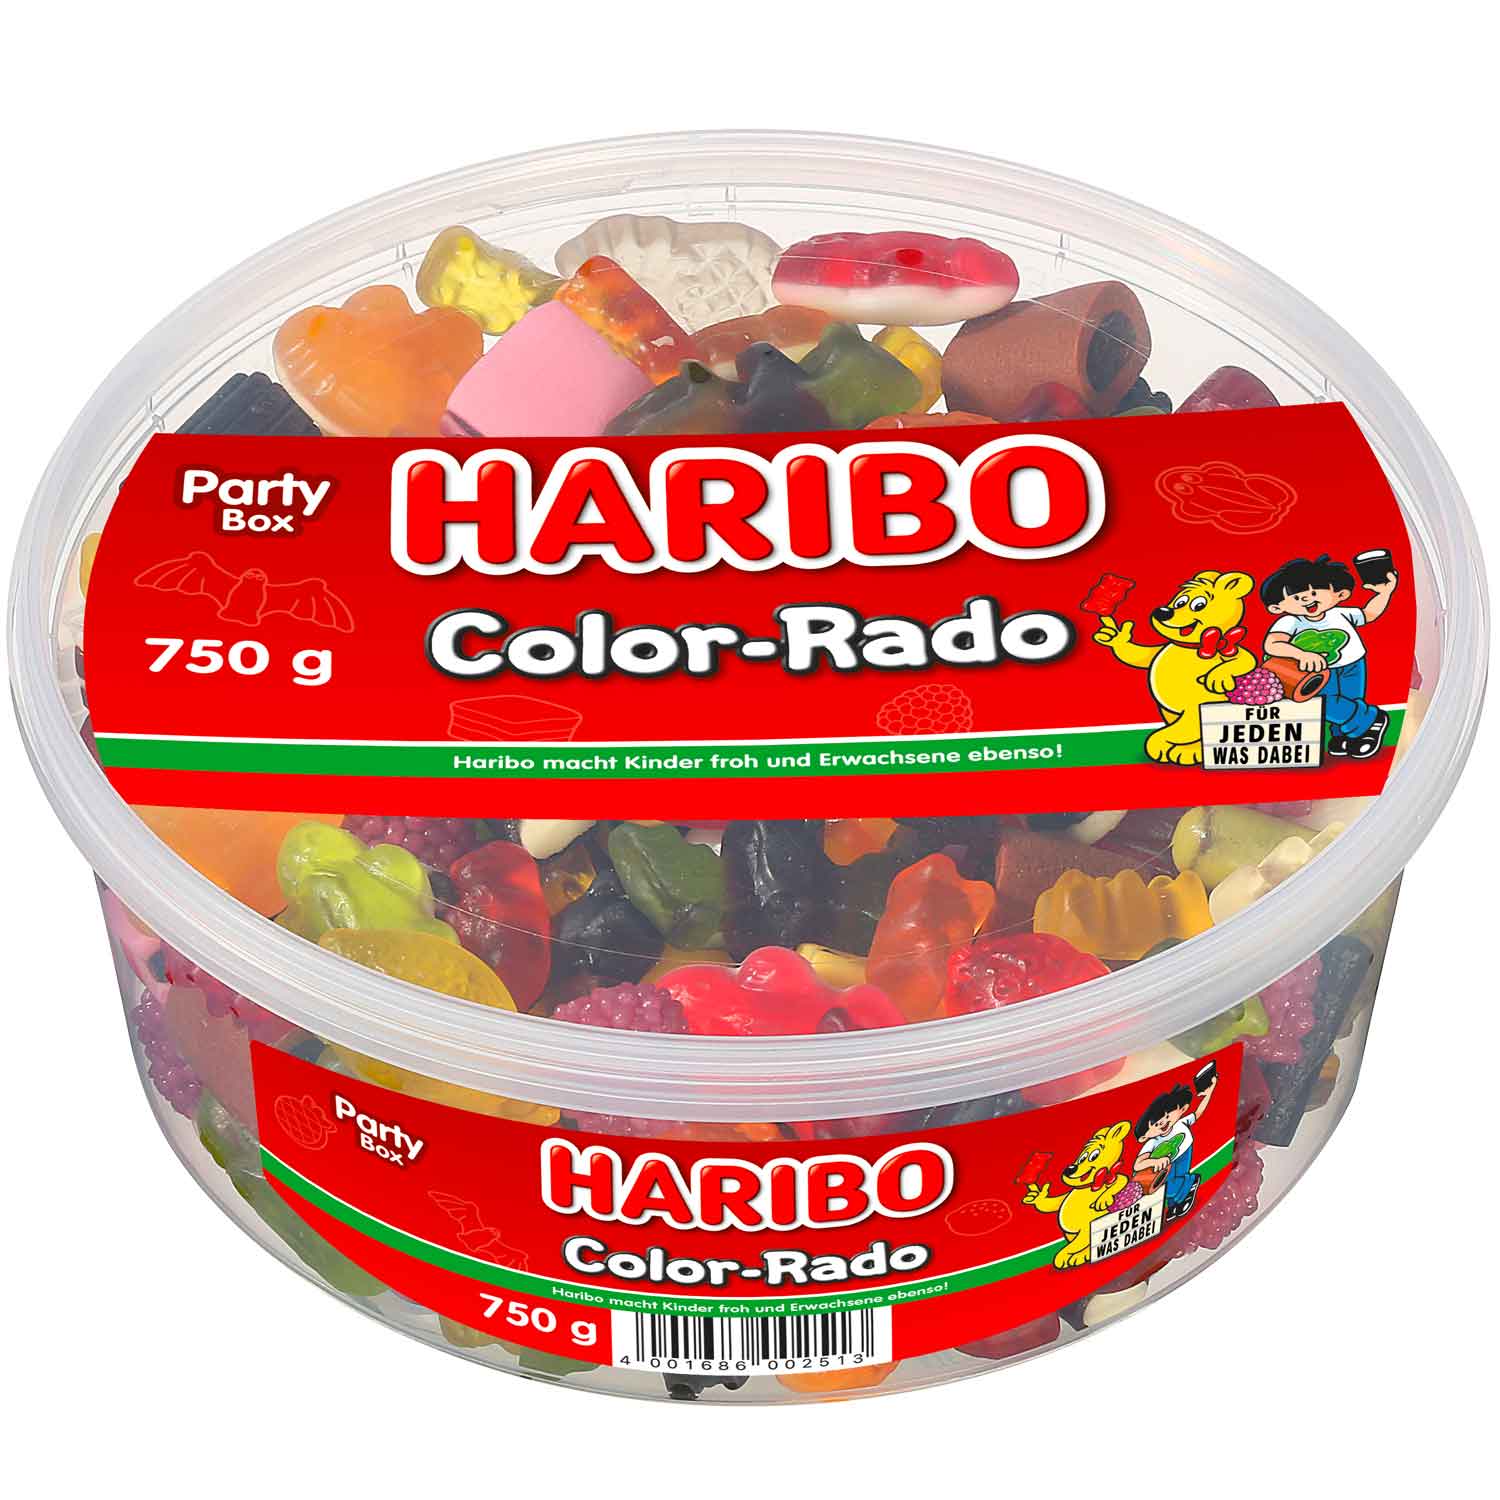 Haribo Color-Rado 750g - Candyshop.ch